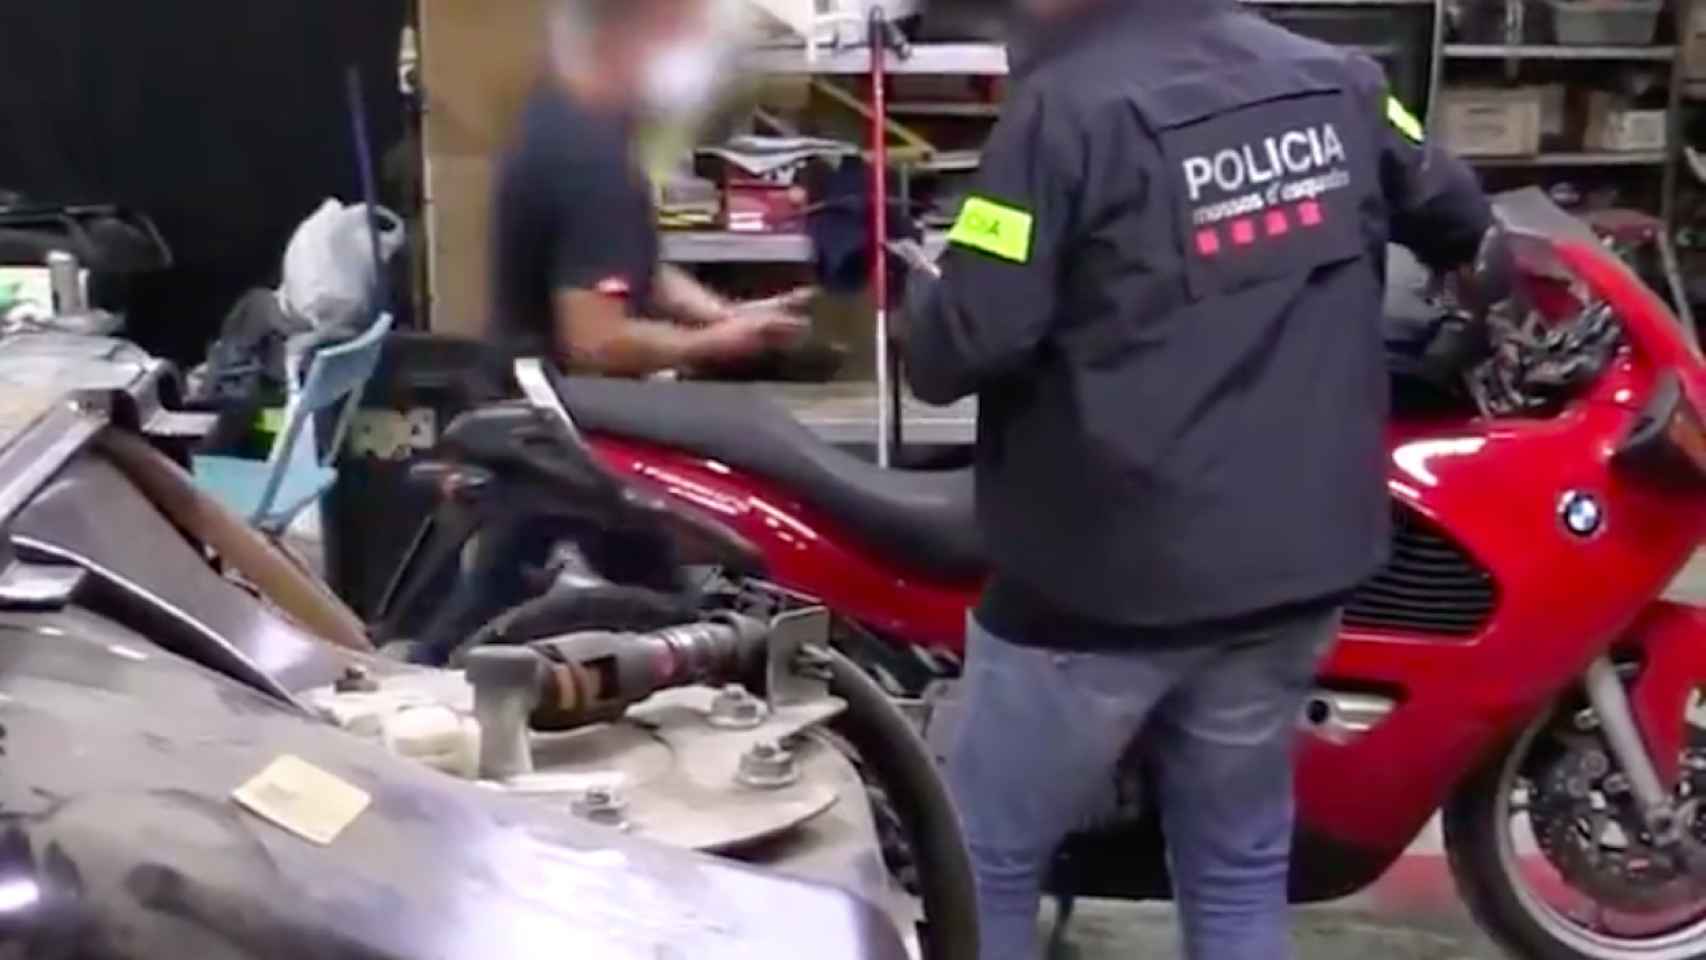 Los Mossos han desarticulado este viernes a una organización criminal dedicada a sustraer motocicletas / MOSSOS D'ESQUADRA